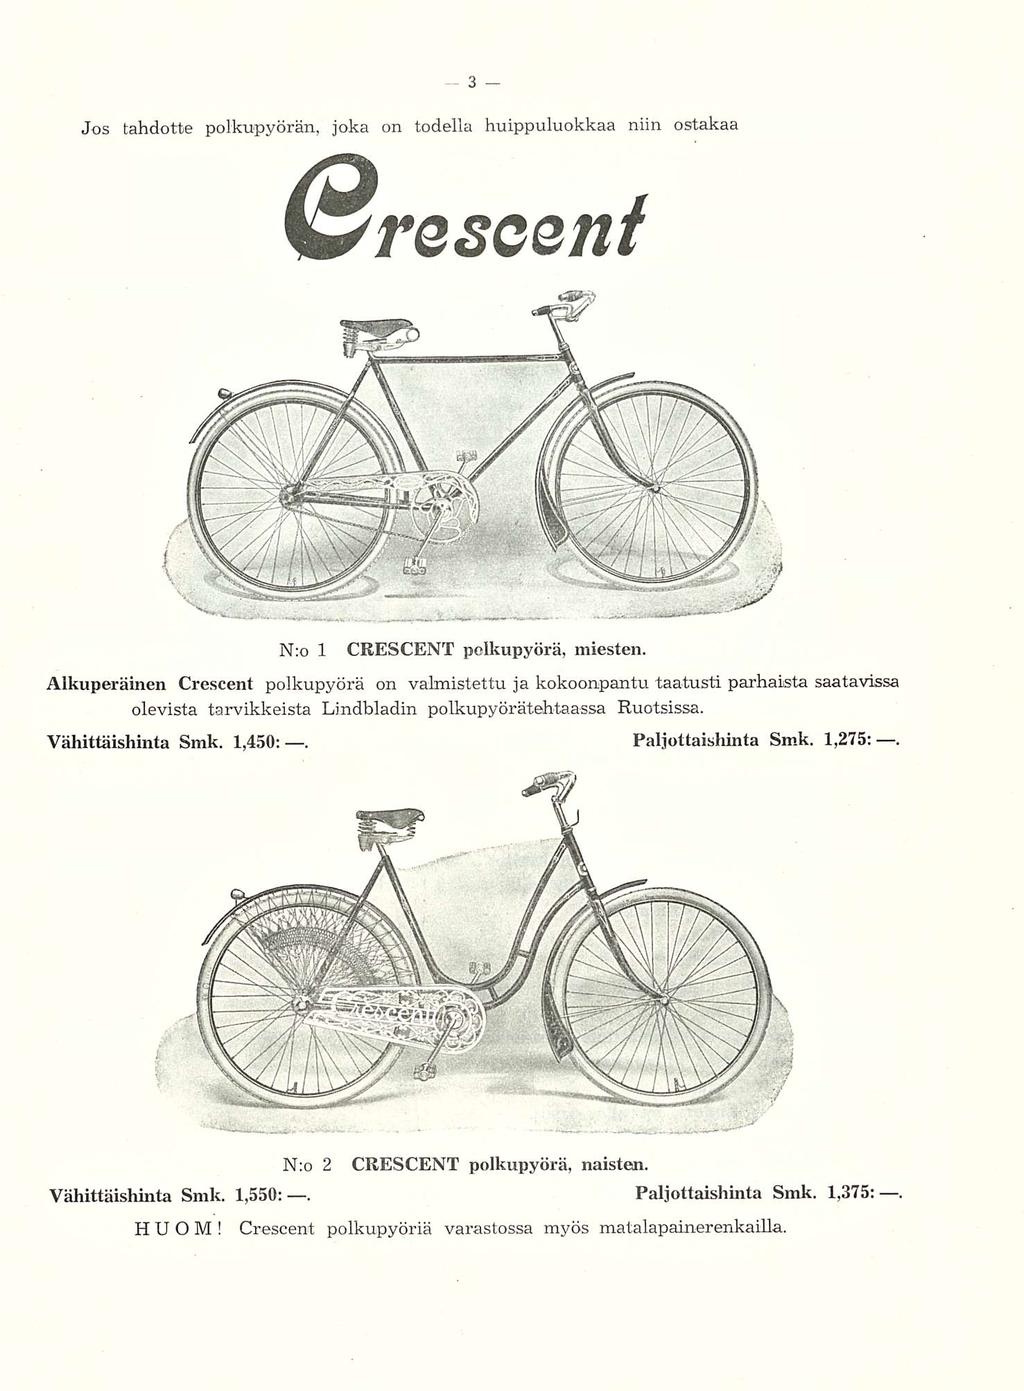 Jos tahdotte polkupyörän, joka on todella huippuluokkaa niin ostakaa Nro 1 CRESCENT polkupyörä, miesten.